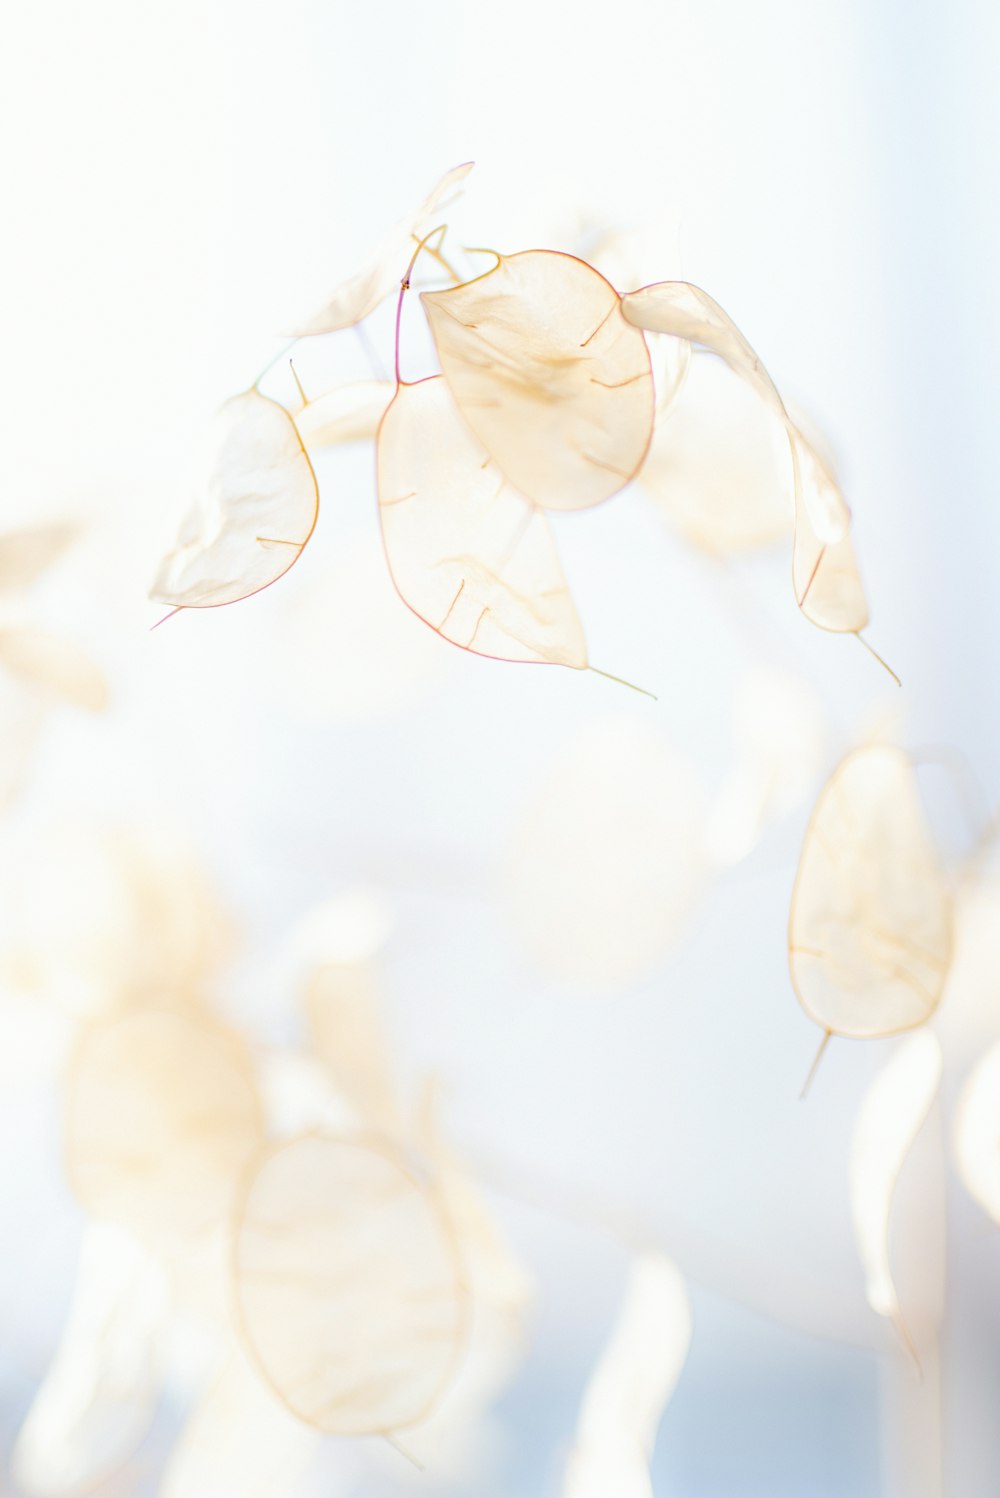 pétalos de flores blancas y marrones